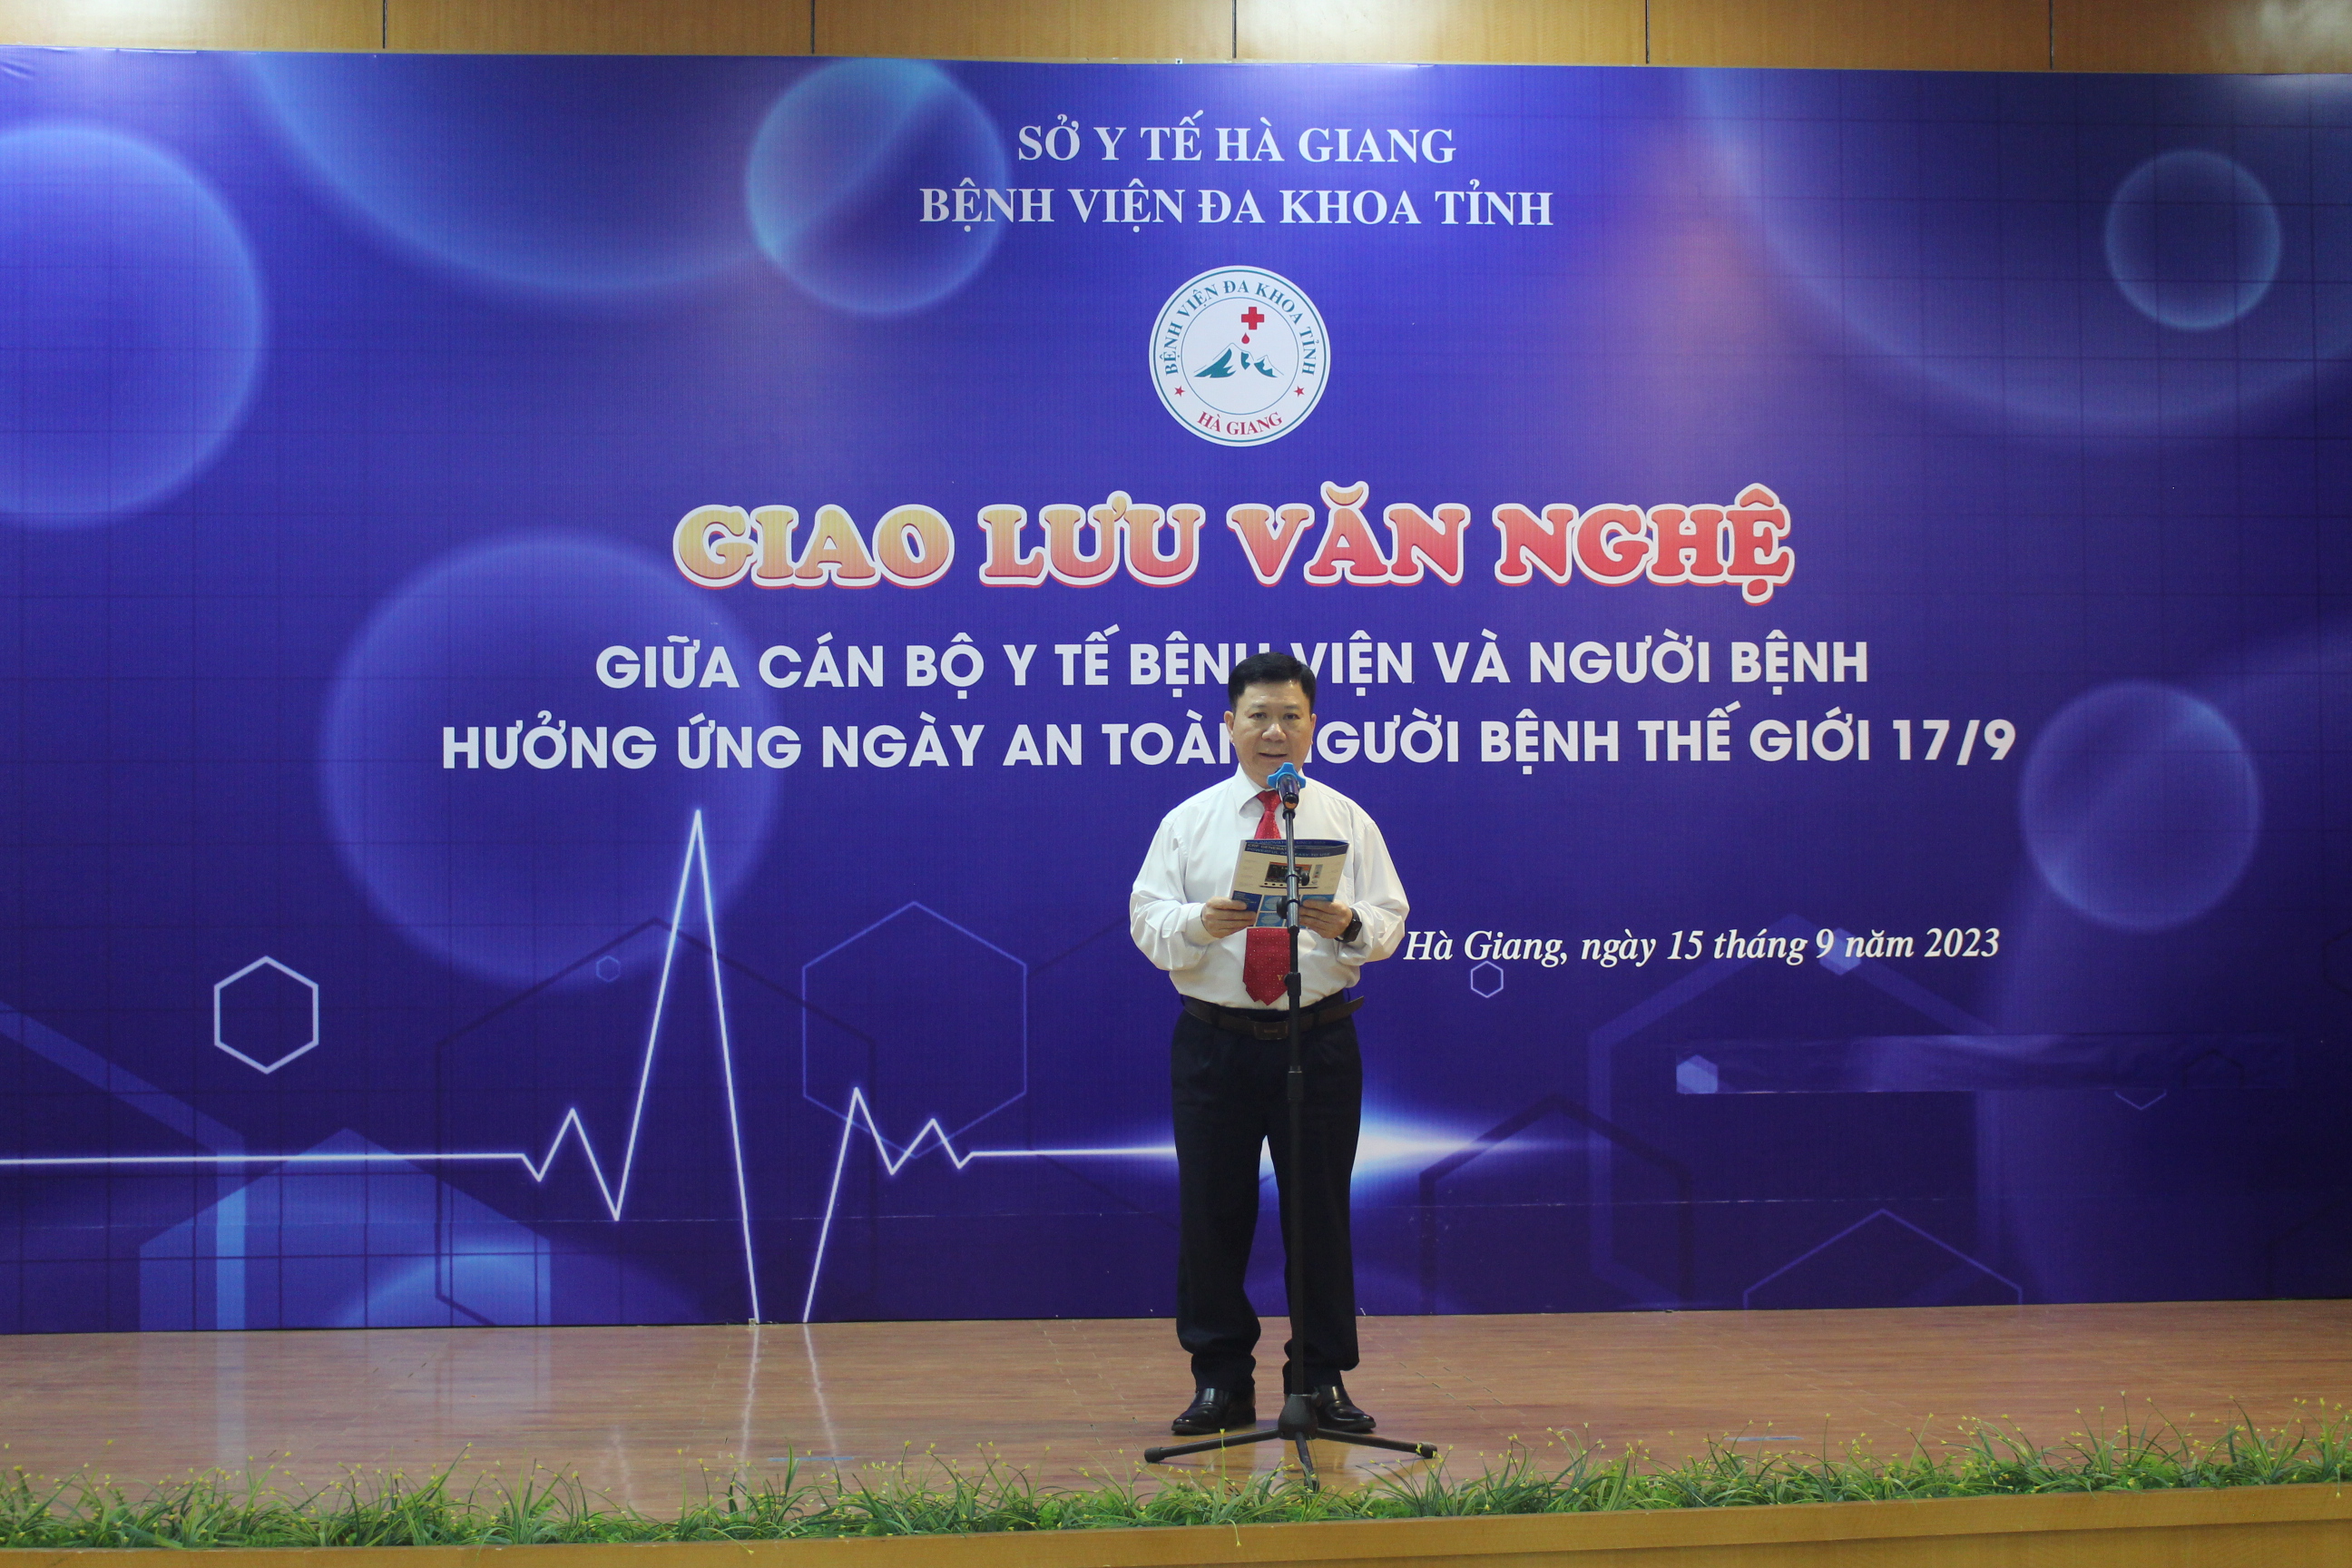 Đ/c Nguyễn Quốc Dũng, Phó Giám đốc BVĐK phát biểu khai mạc đêm giao lưu văn nghệ.